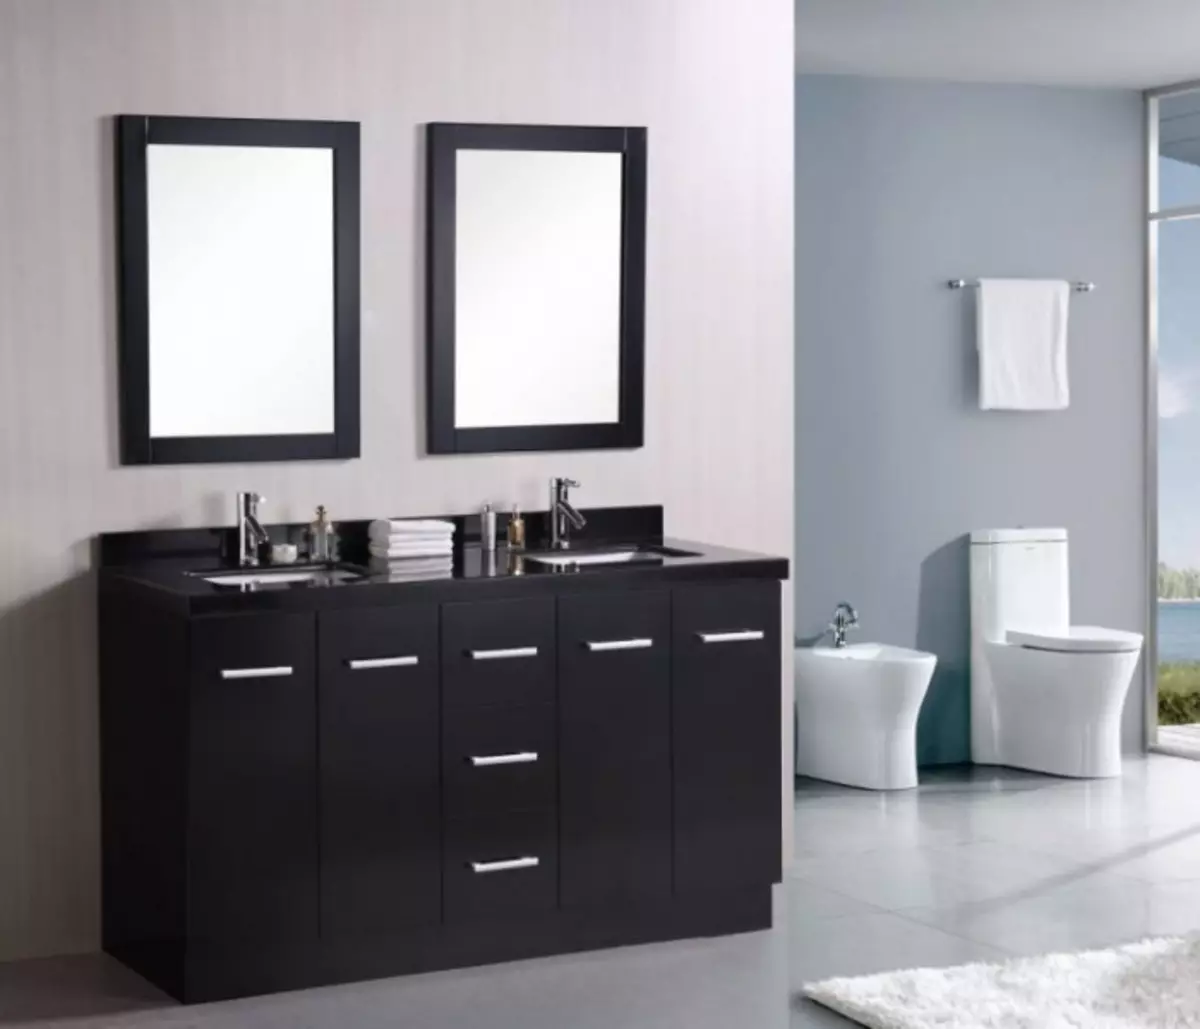 Ариун цэврийн угаах угаалгын өрөө - каталогоос хамгийн сайн шинэ бүтээгдэхүүний 105 зураг